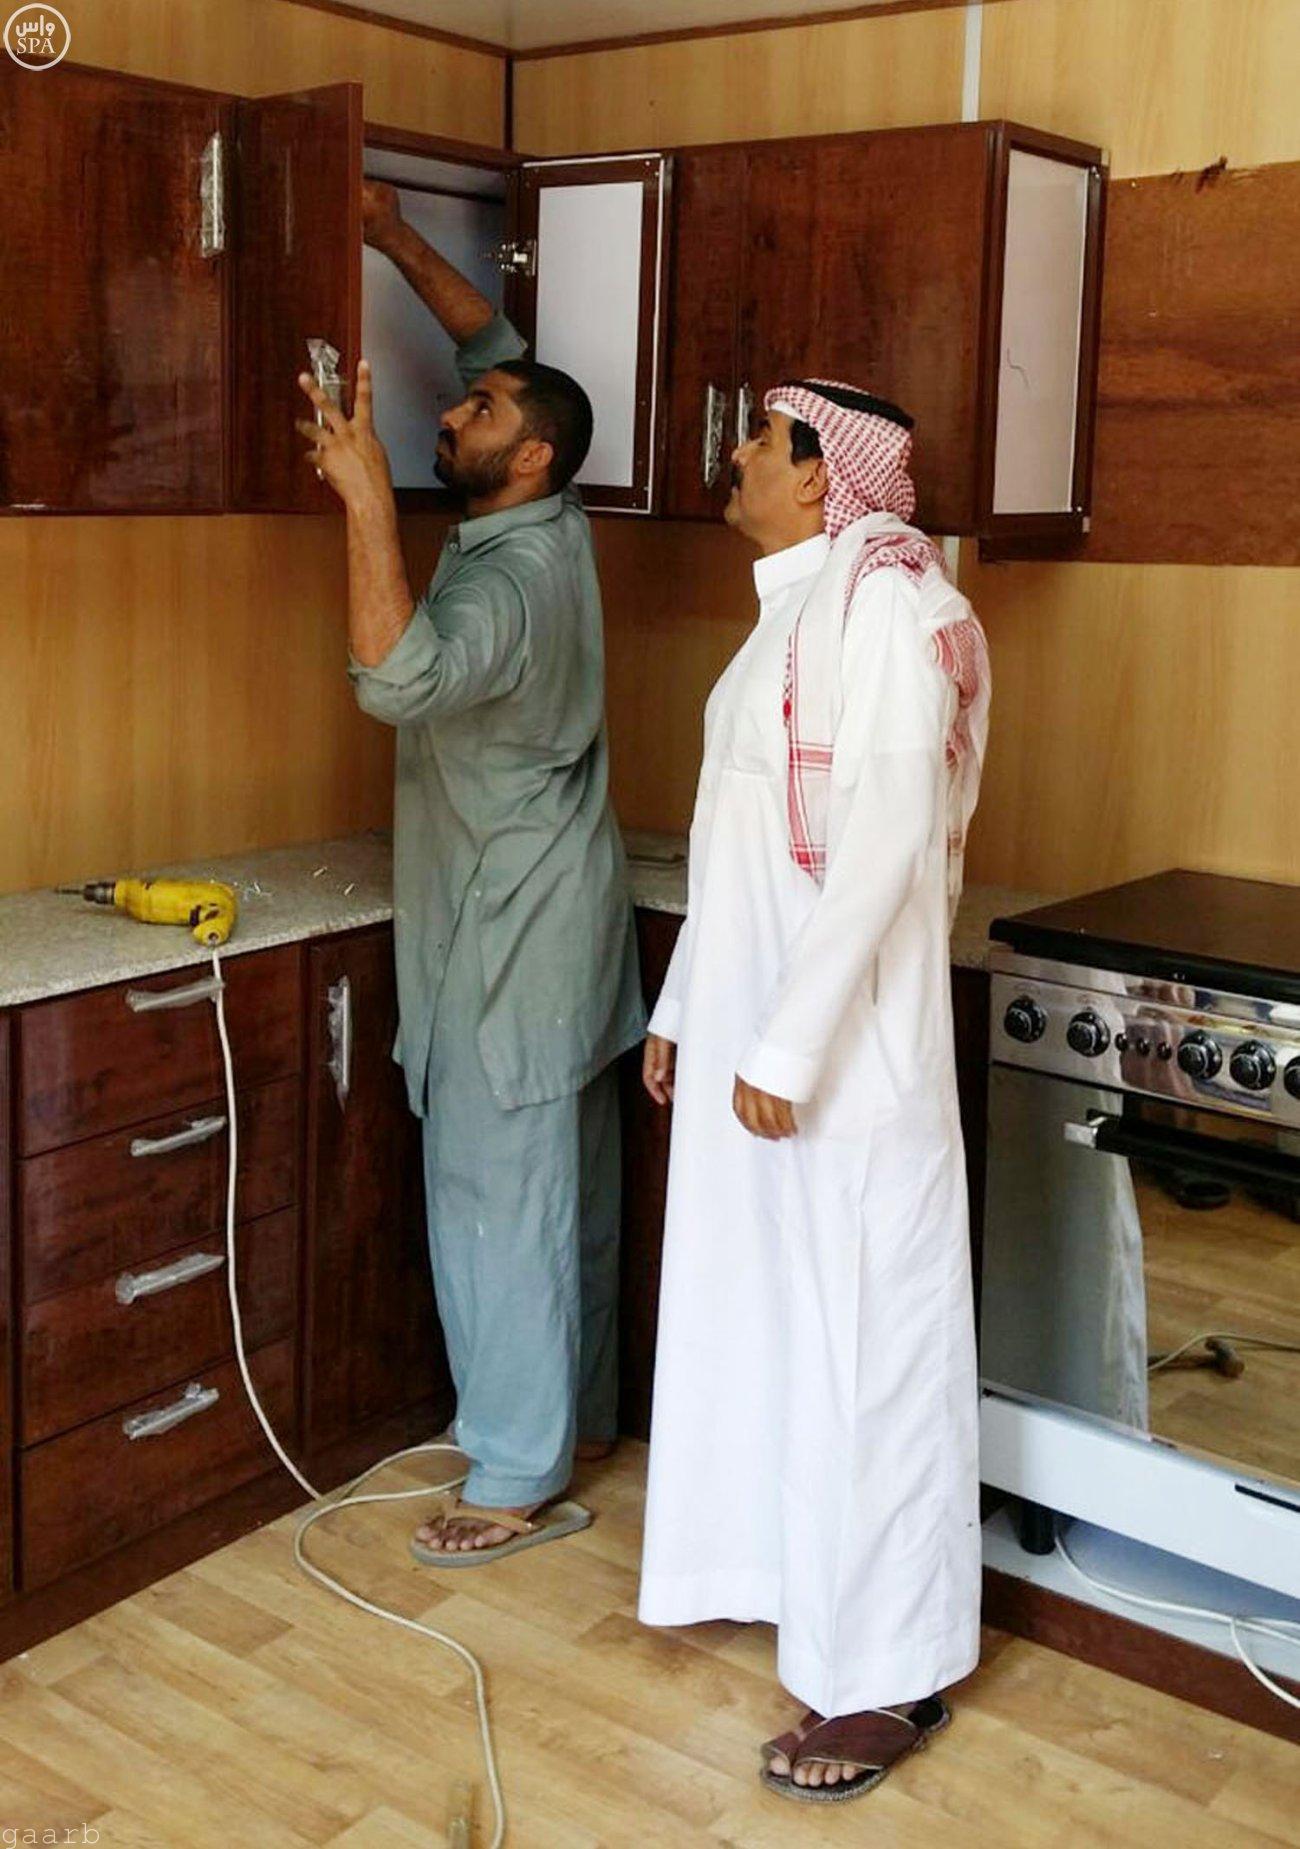 مكتب الضمان الاجتماعي في مكة المكرمة يبدأ في تسليم المستفيدين بشمال مكة احتياجاتهم من الفرش والتأثيث